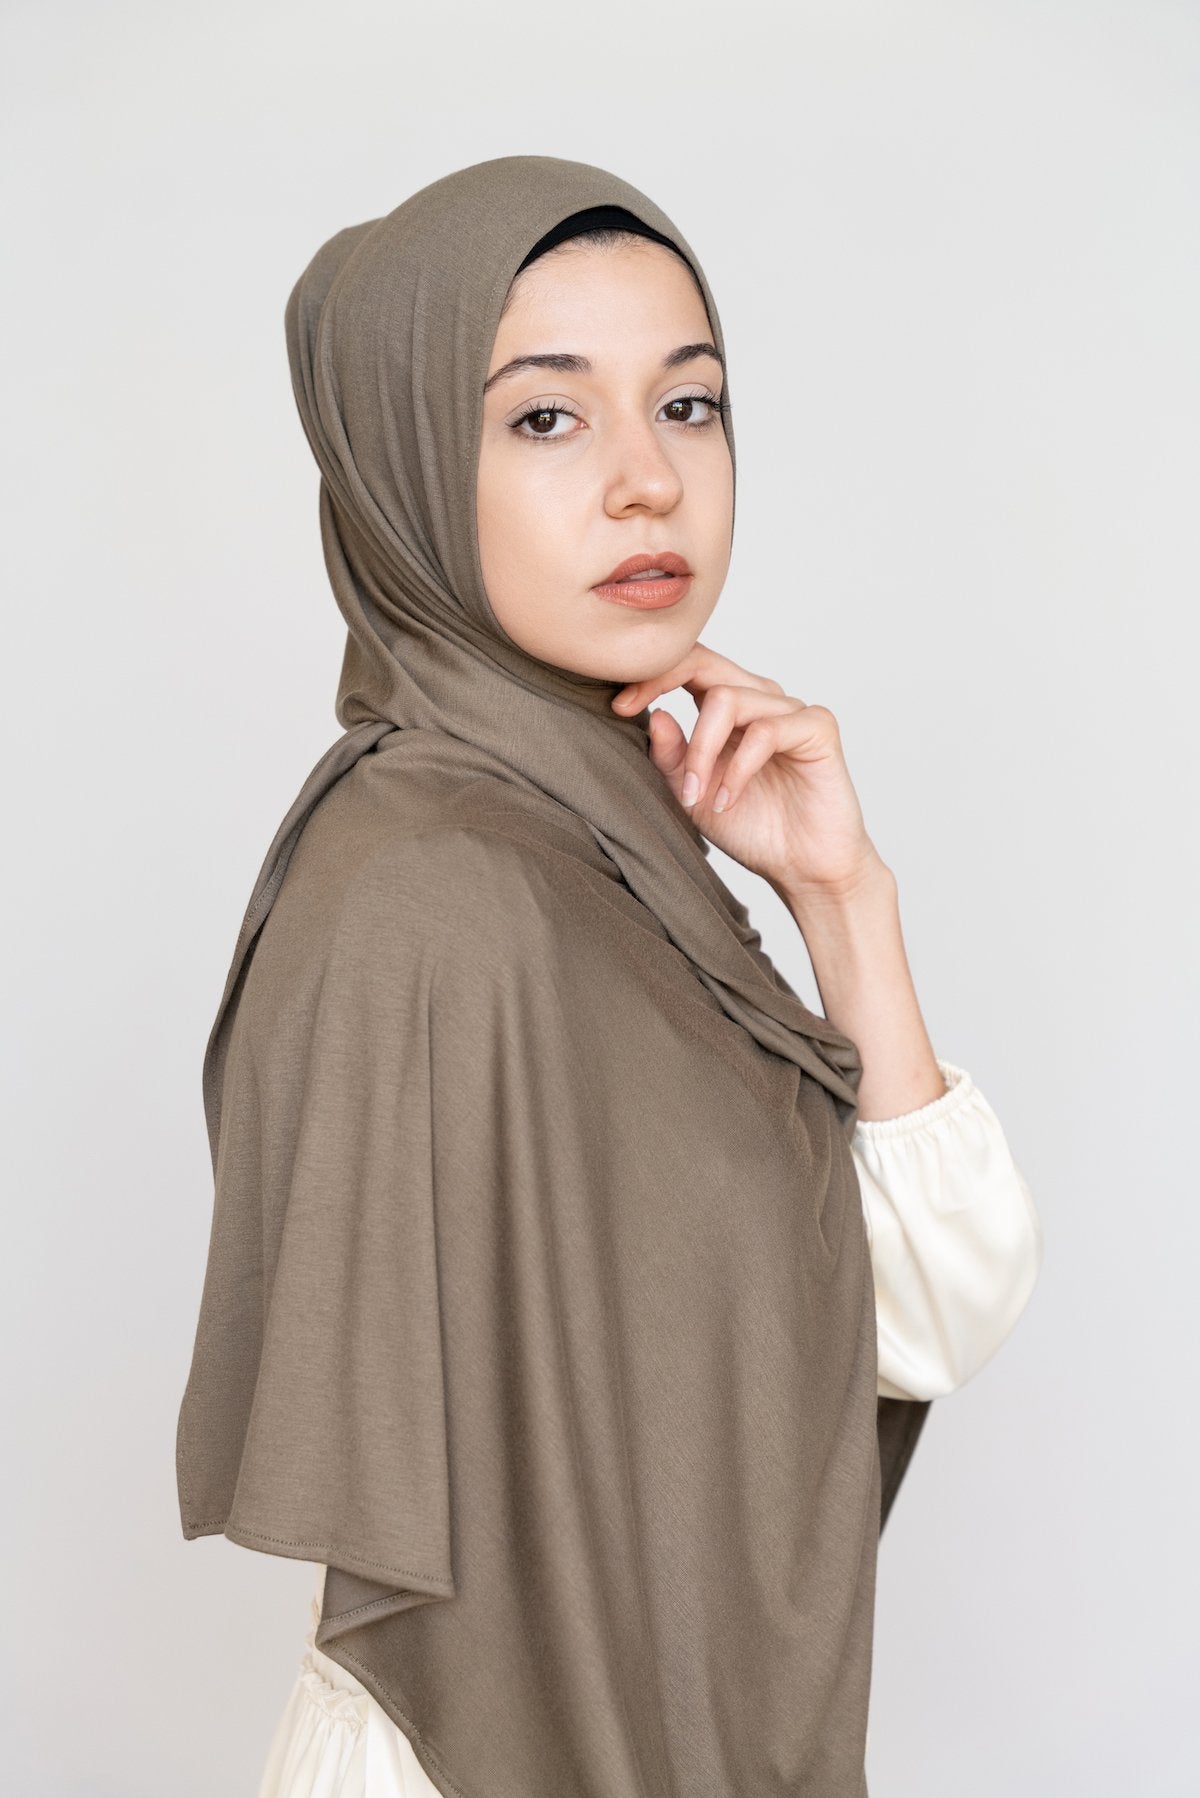 Slate Premium Jersey Hijab  Buy Slate Premium Jersey Hijab